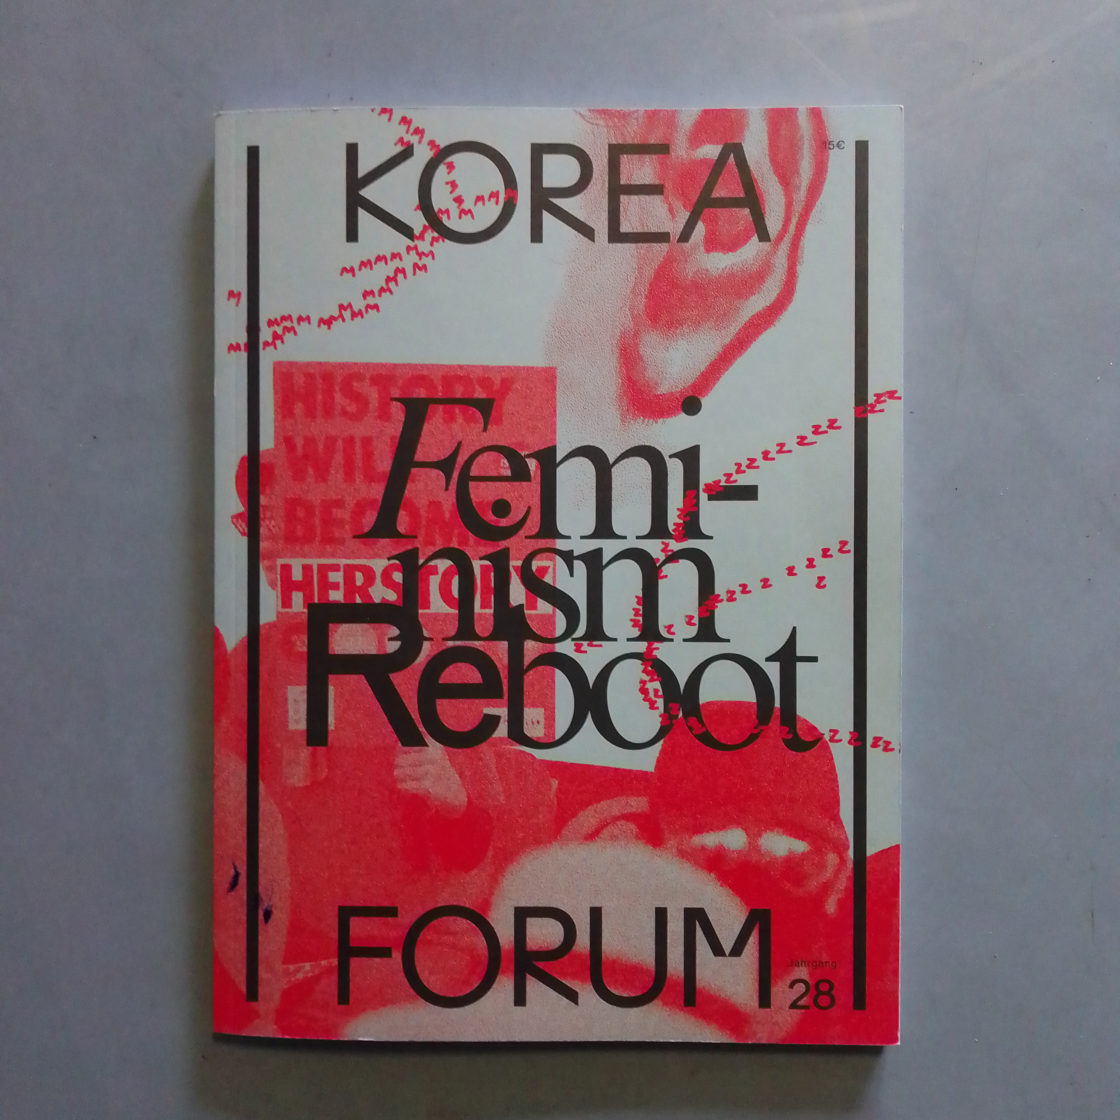 Titelseite Korea Forum, Feminism Reboot. blaugraue Hintergrund, vergrößerte Foto von Menschen mit Plakat "History will become herstory" in rot, darüber Titel in schwarz